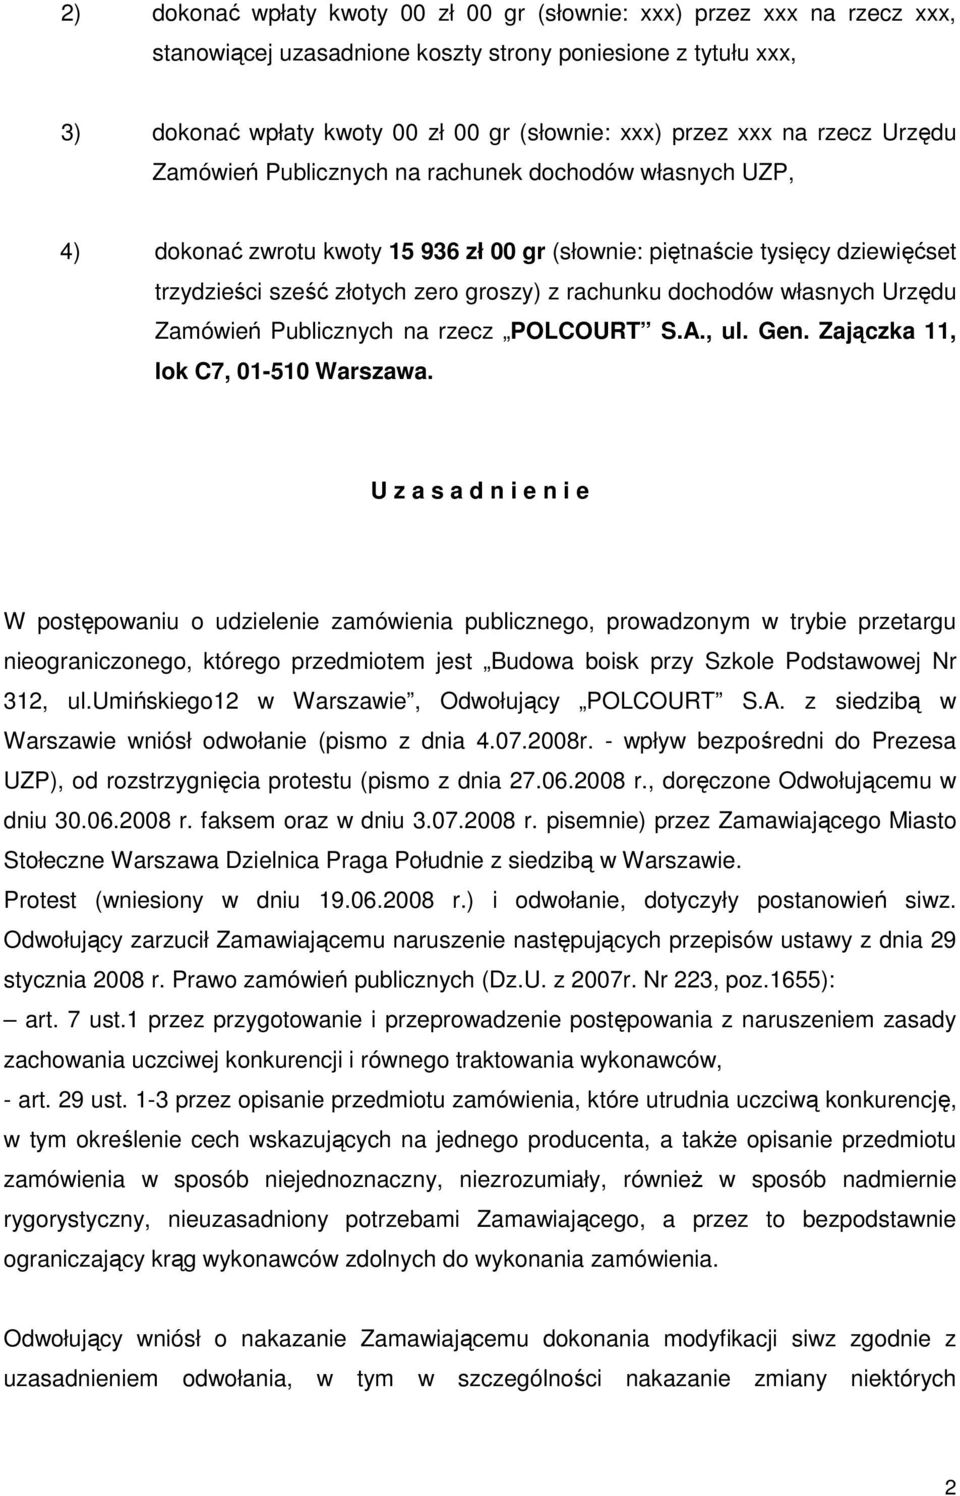 rachunku dochodów własnych Urzędu Zamówień Publicznych na rzecz POLCOURT S.A., ul. Gen. Zajączka 11, lok C7, 01-510 Warszawa.